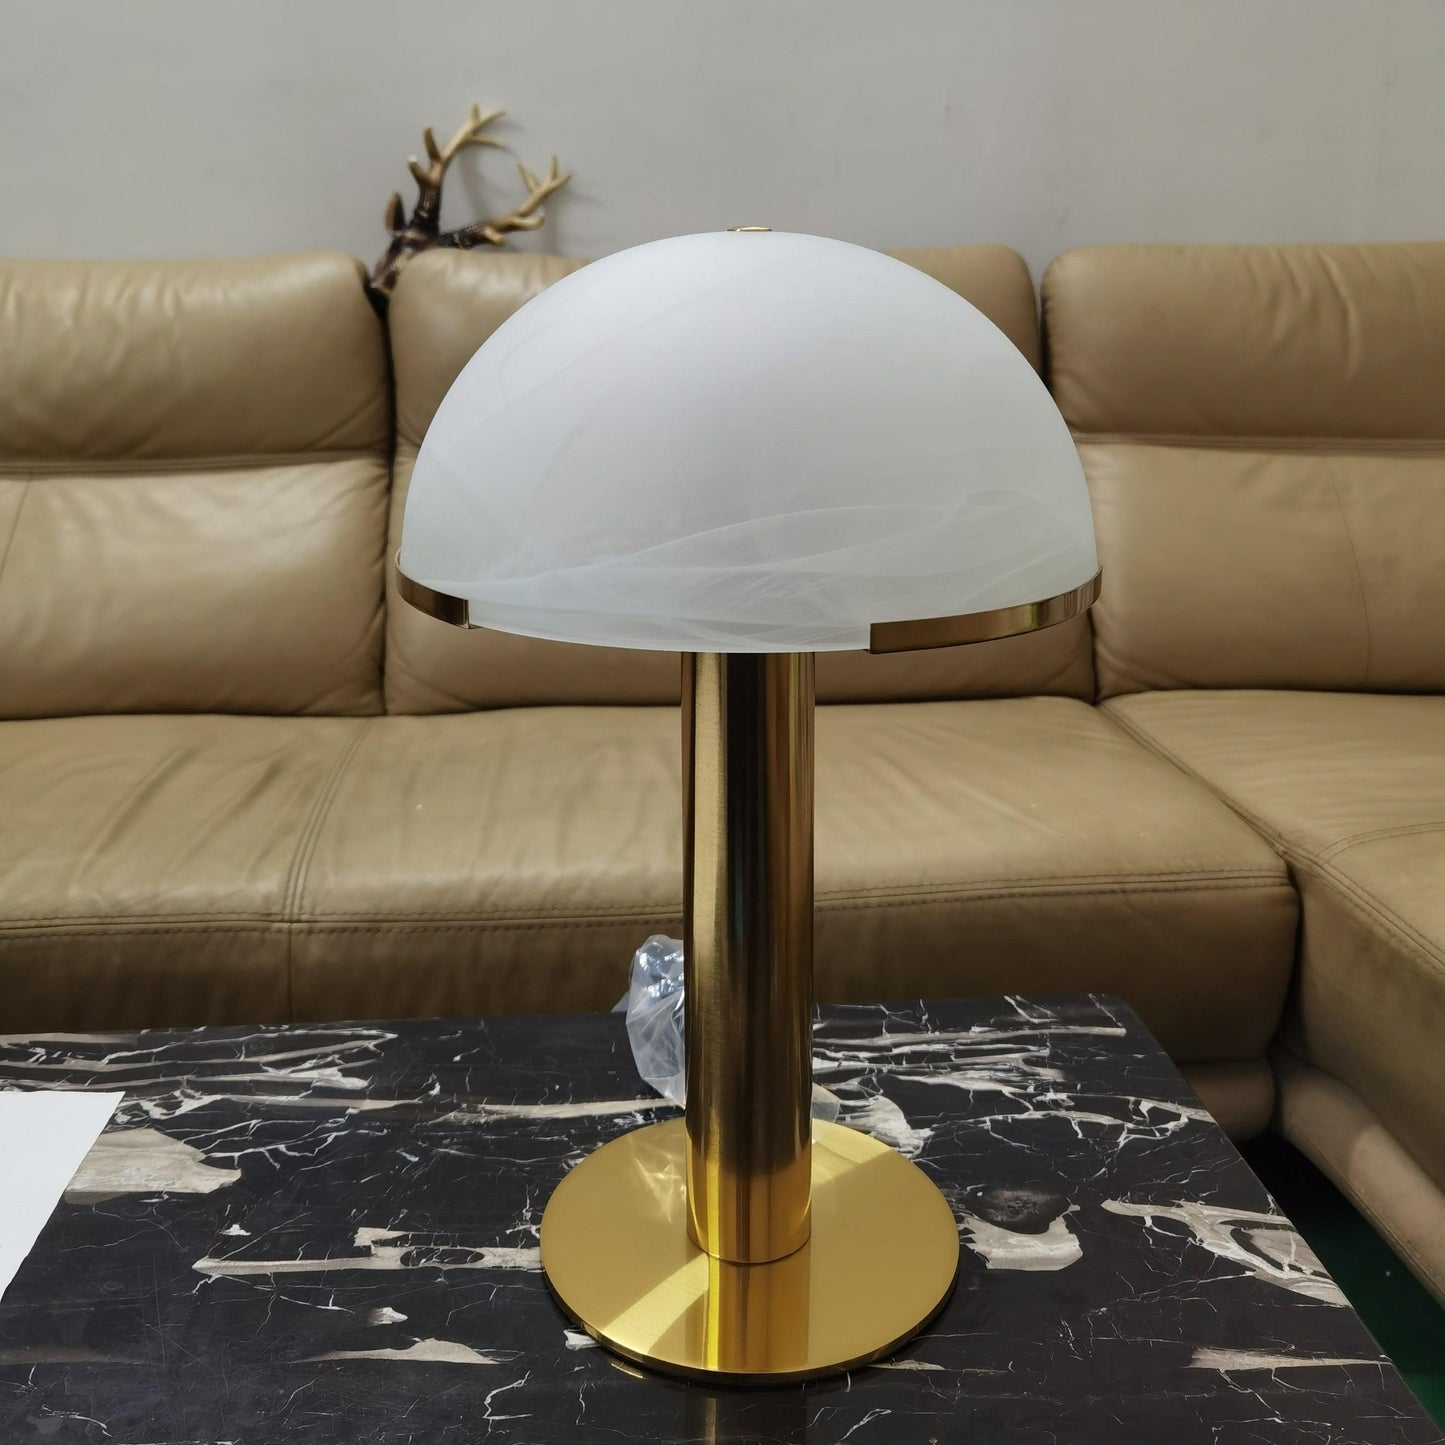 Elegance Alabaster Table Lamp